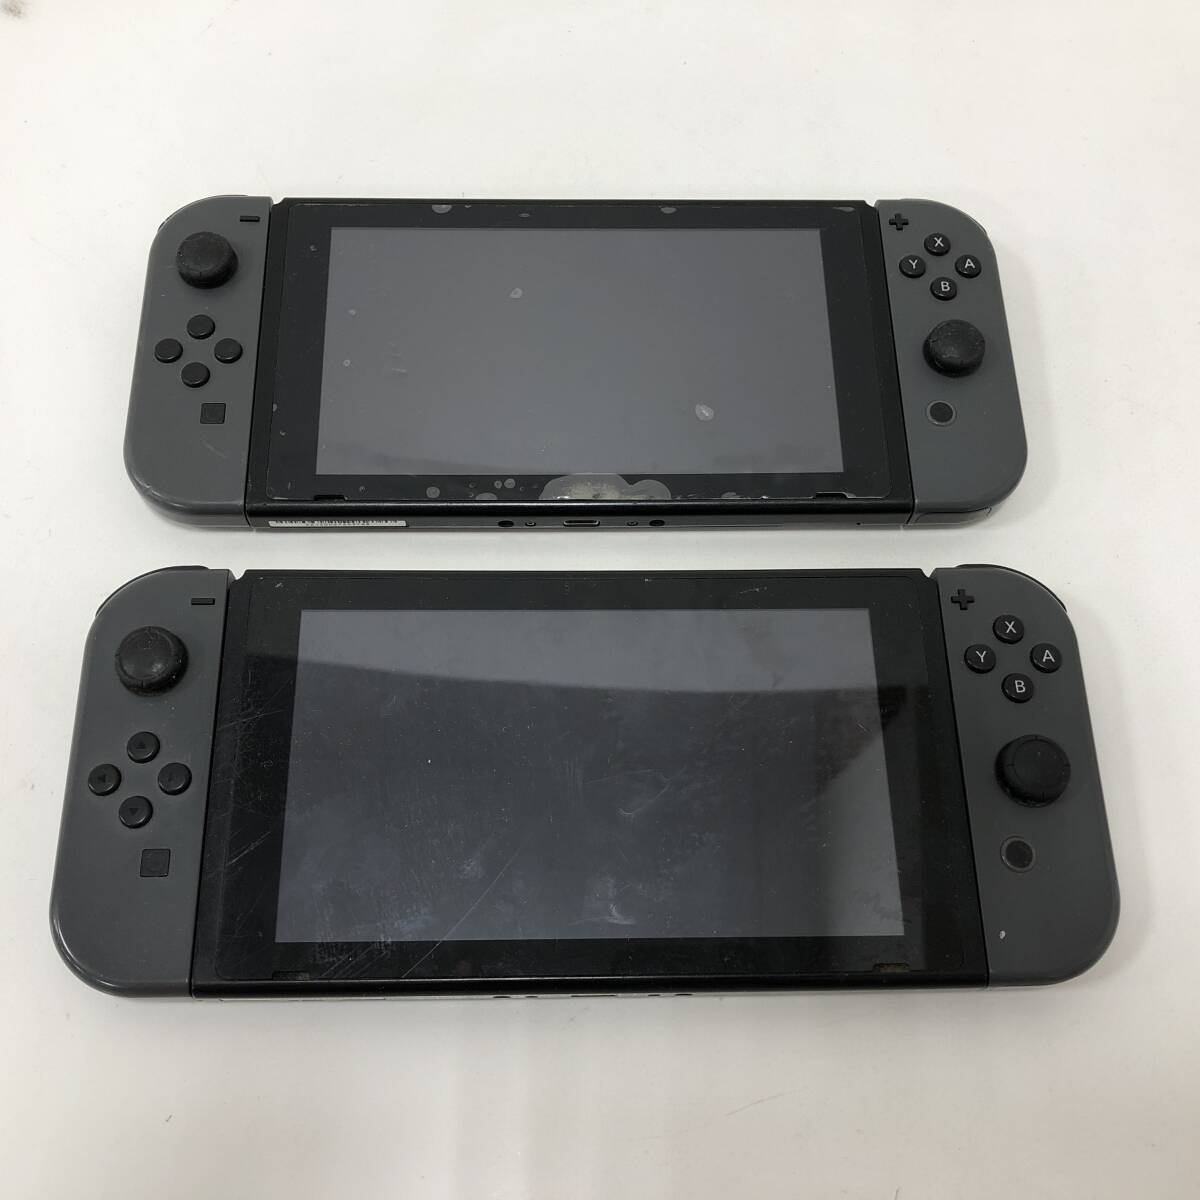 [1 jpy ~] Nintendo switch body Joy navy blue summarize NINTENDO SWITCH game machine [ junk ]